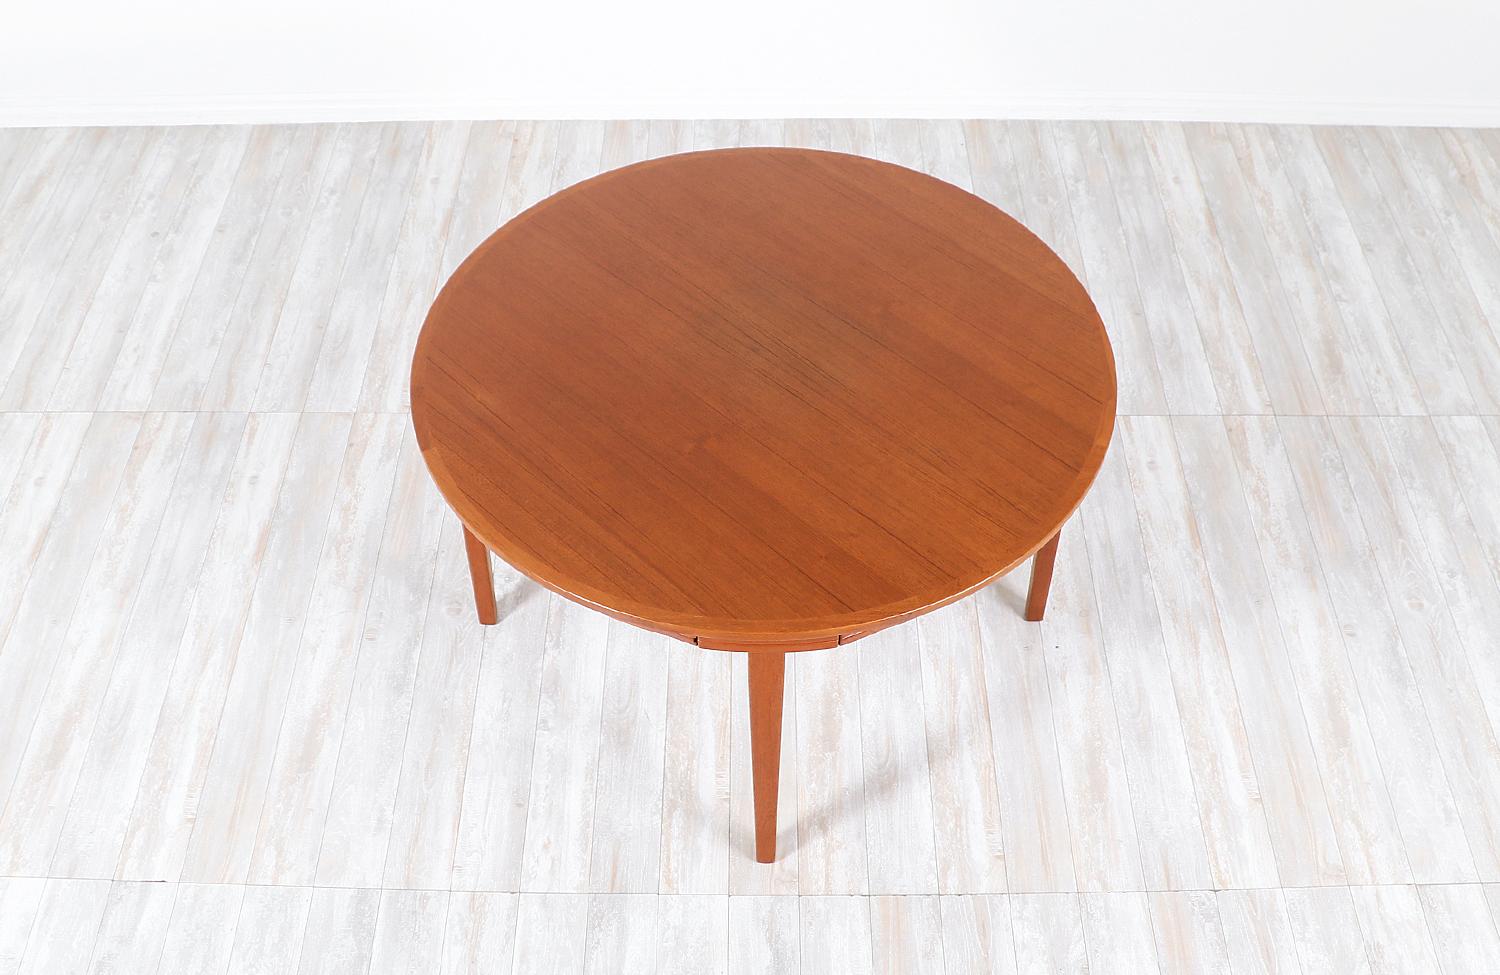 Danish Modern “Flip-Flap” Teak Dining Table by Dyrlund 1